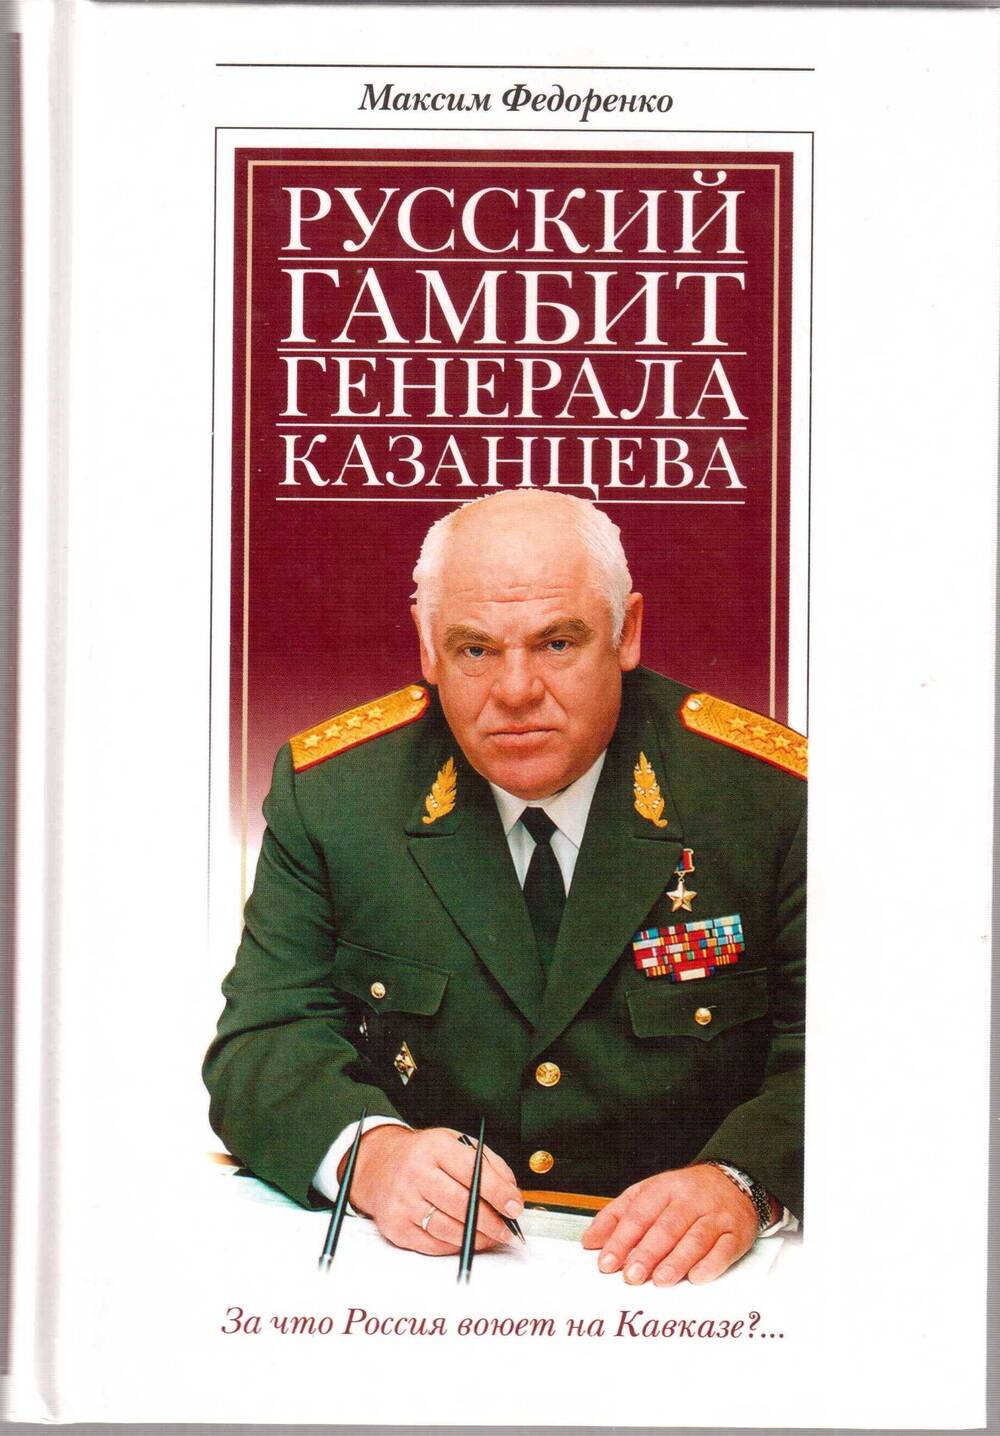 Максим Федоренко. Русский гамбит генерала Казанцева